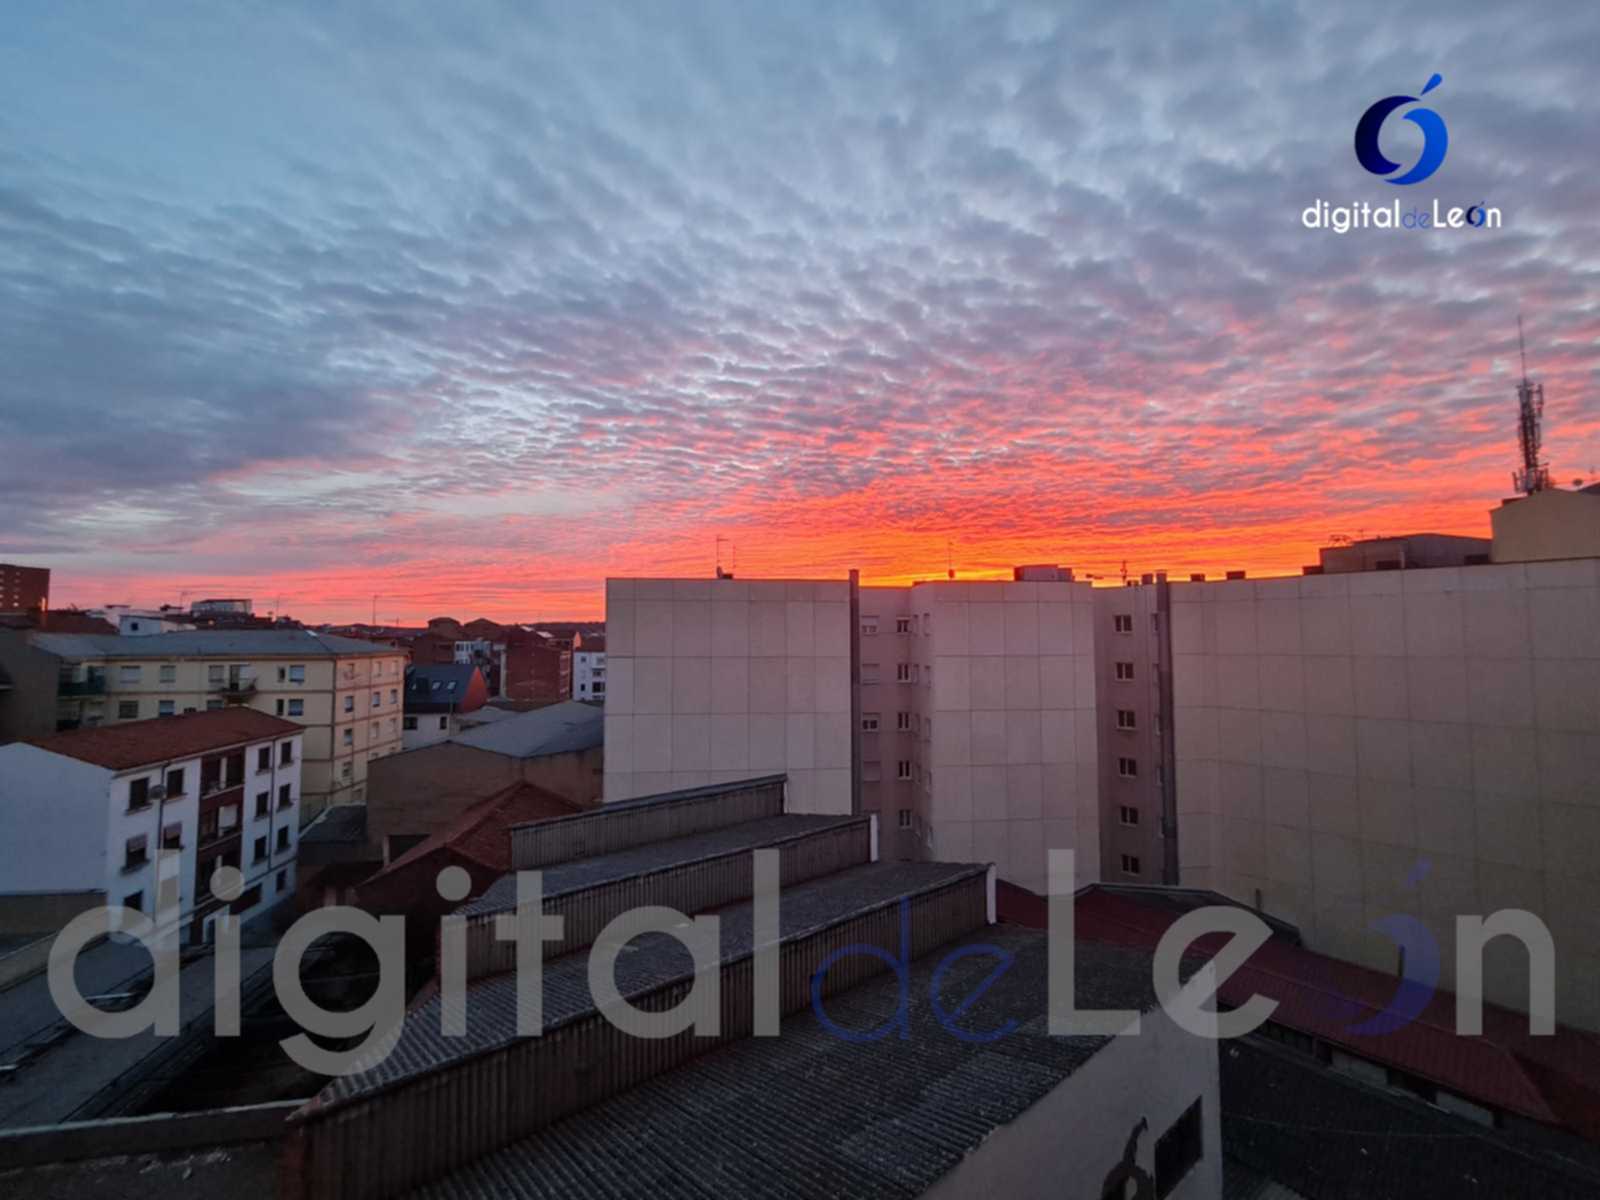 Precioso amanecer en León un 3 de febrero 1